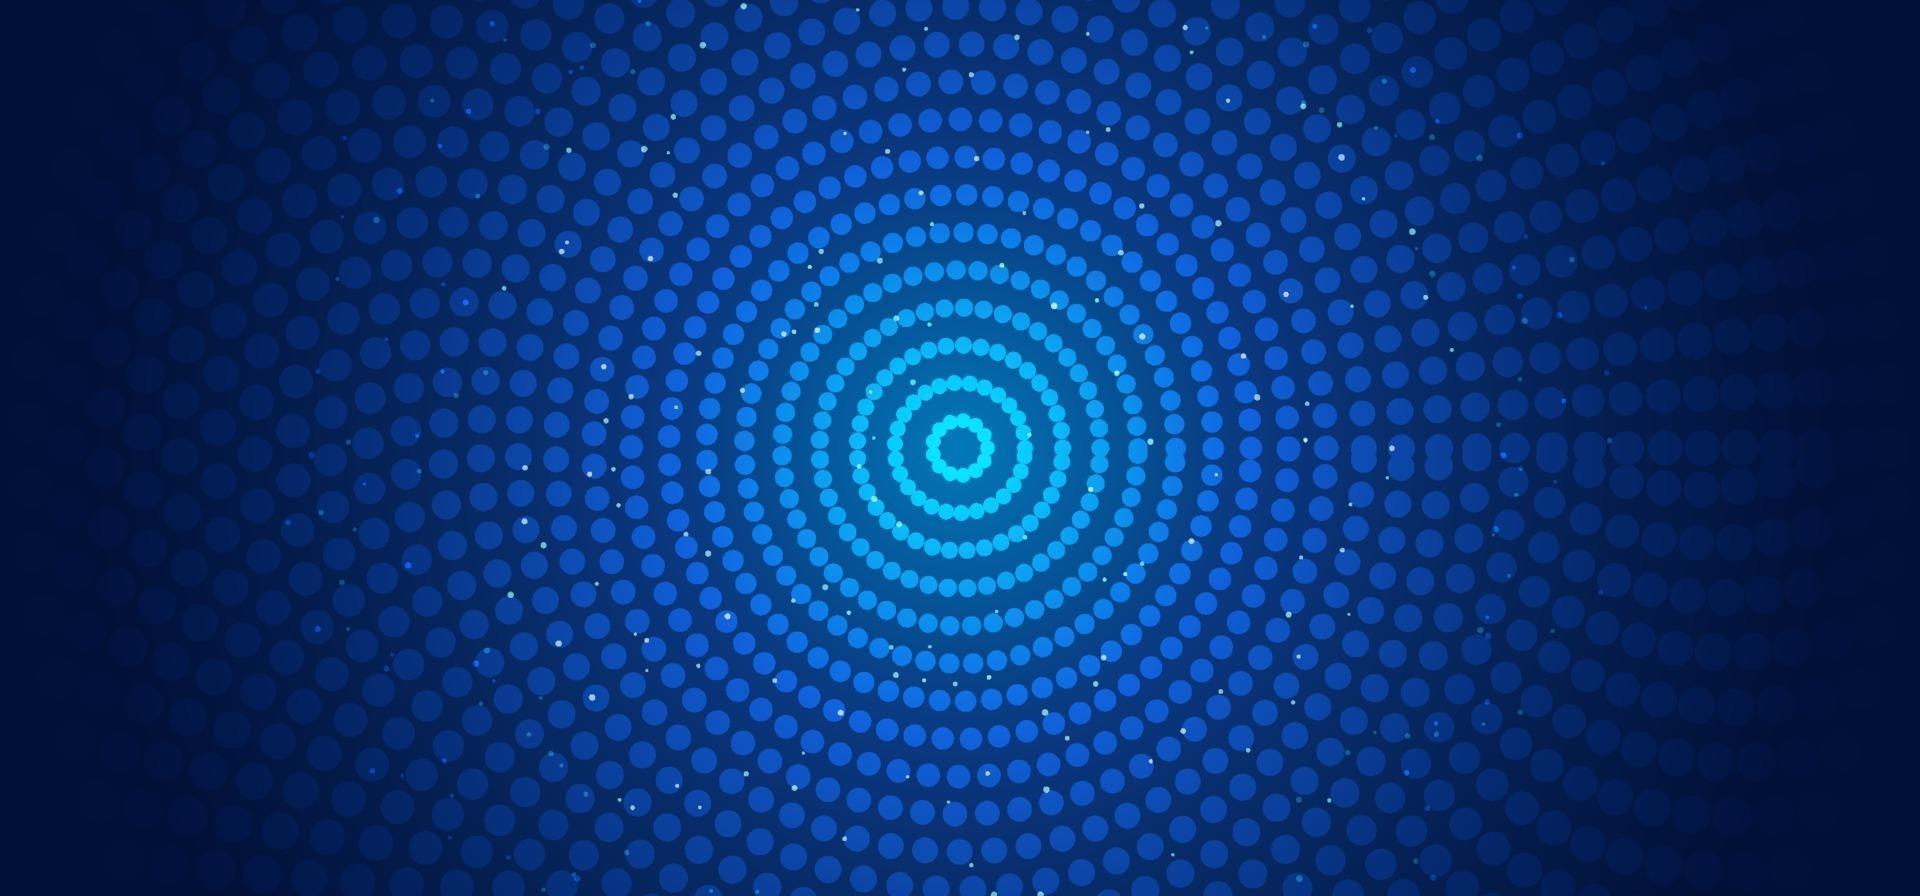 astratto banner orizzontale modello web cerchi pattern collegamenti punti e particelle incandescenti sfondo blu vettore